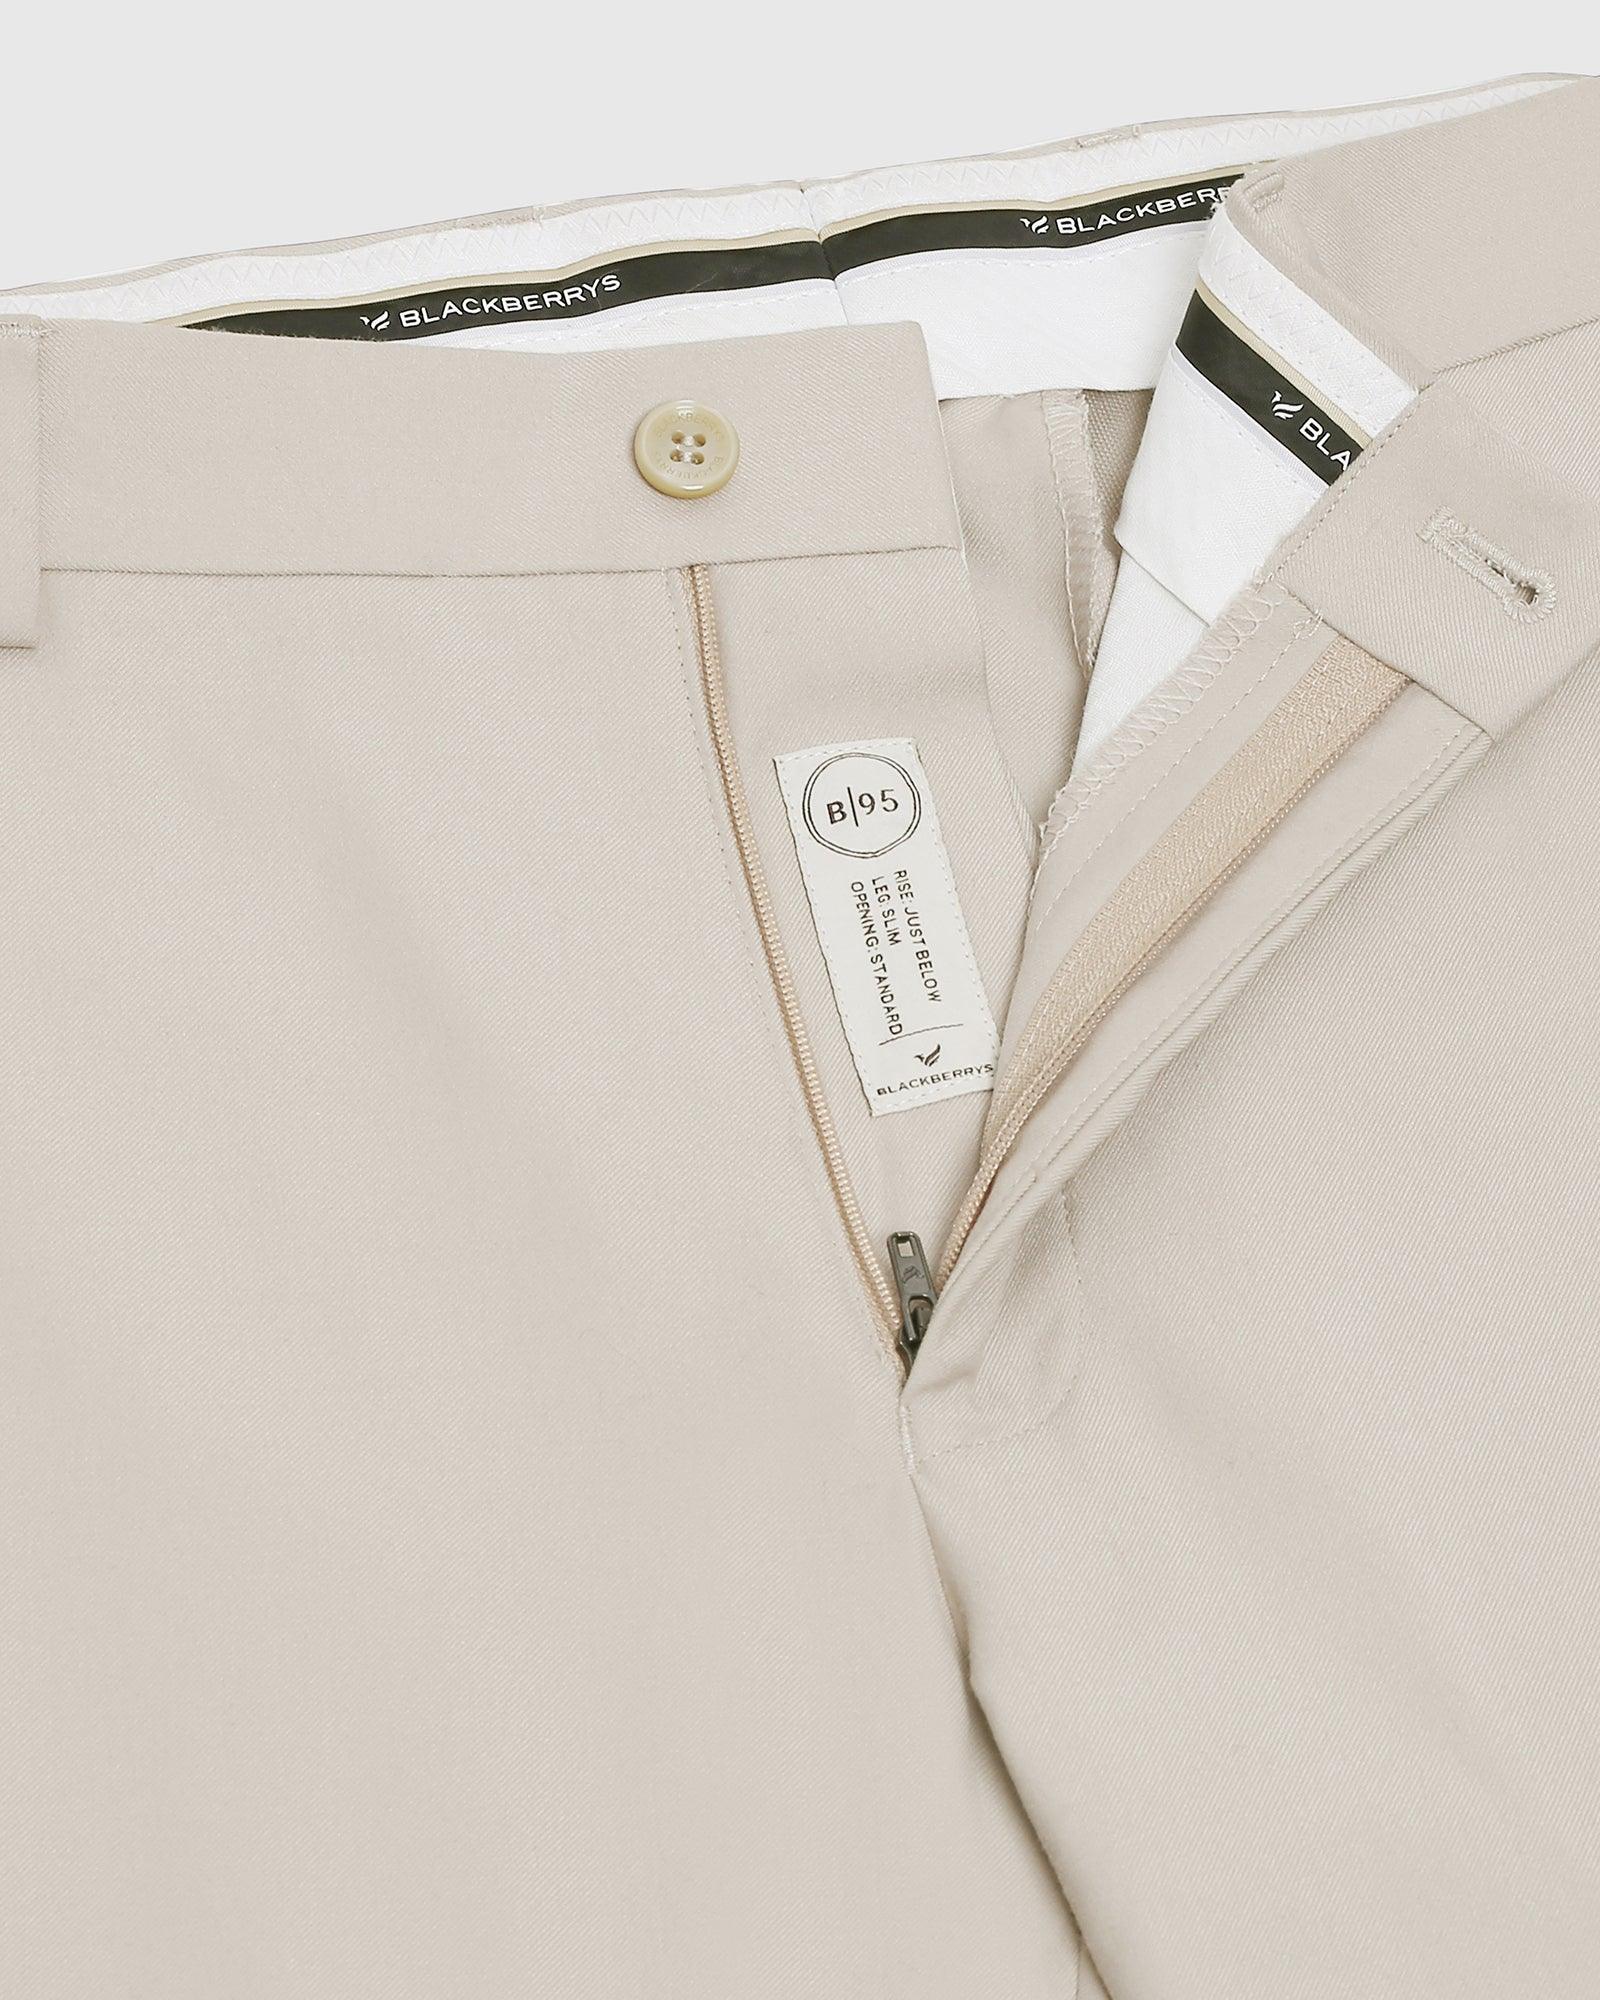 formal trousers in beige b 95 bedward blackberrys clothing 6